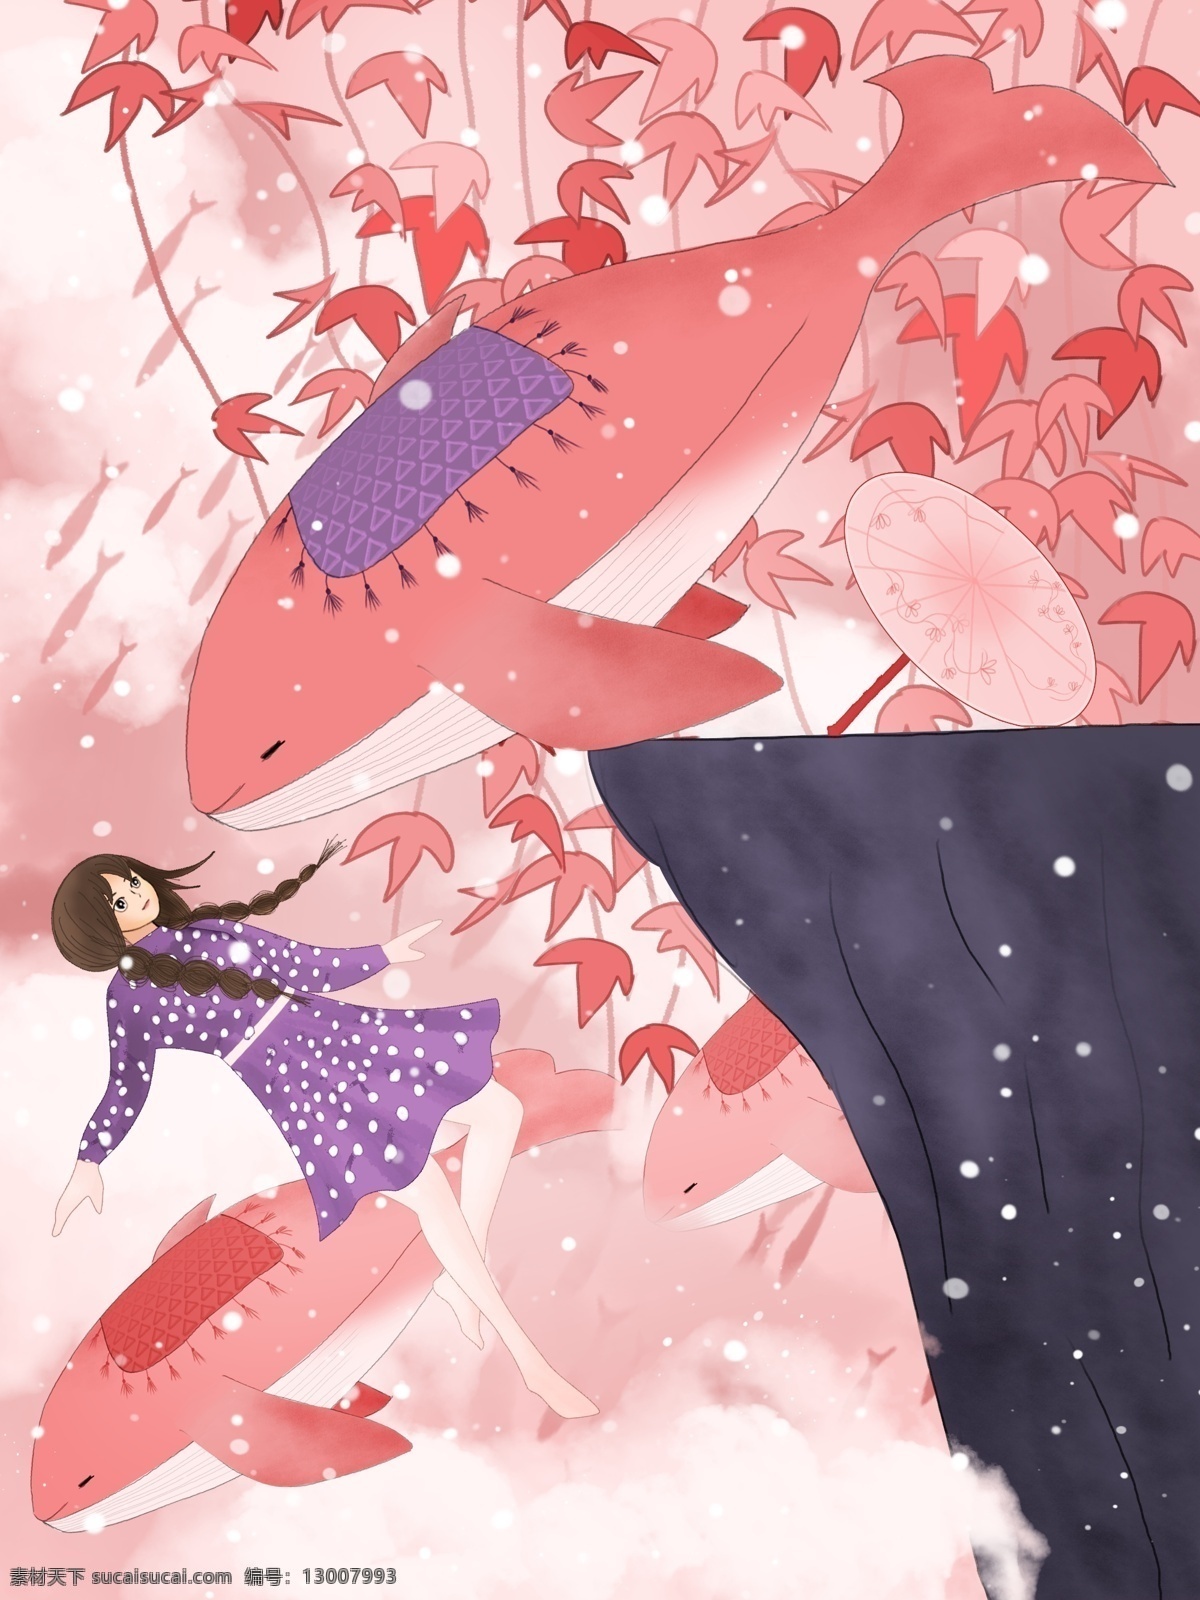 原创 手绘 插画 女孩 鲸鱼 粉色 世界 枫叶 天空 紫色 鲸 鱼 山 悬崖 伞 治愈系